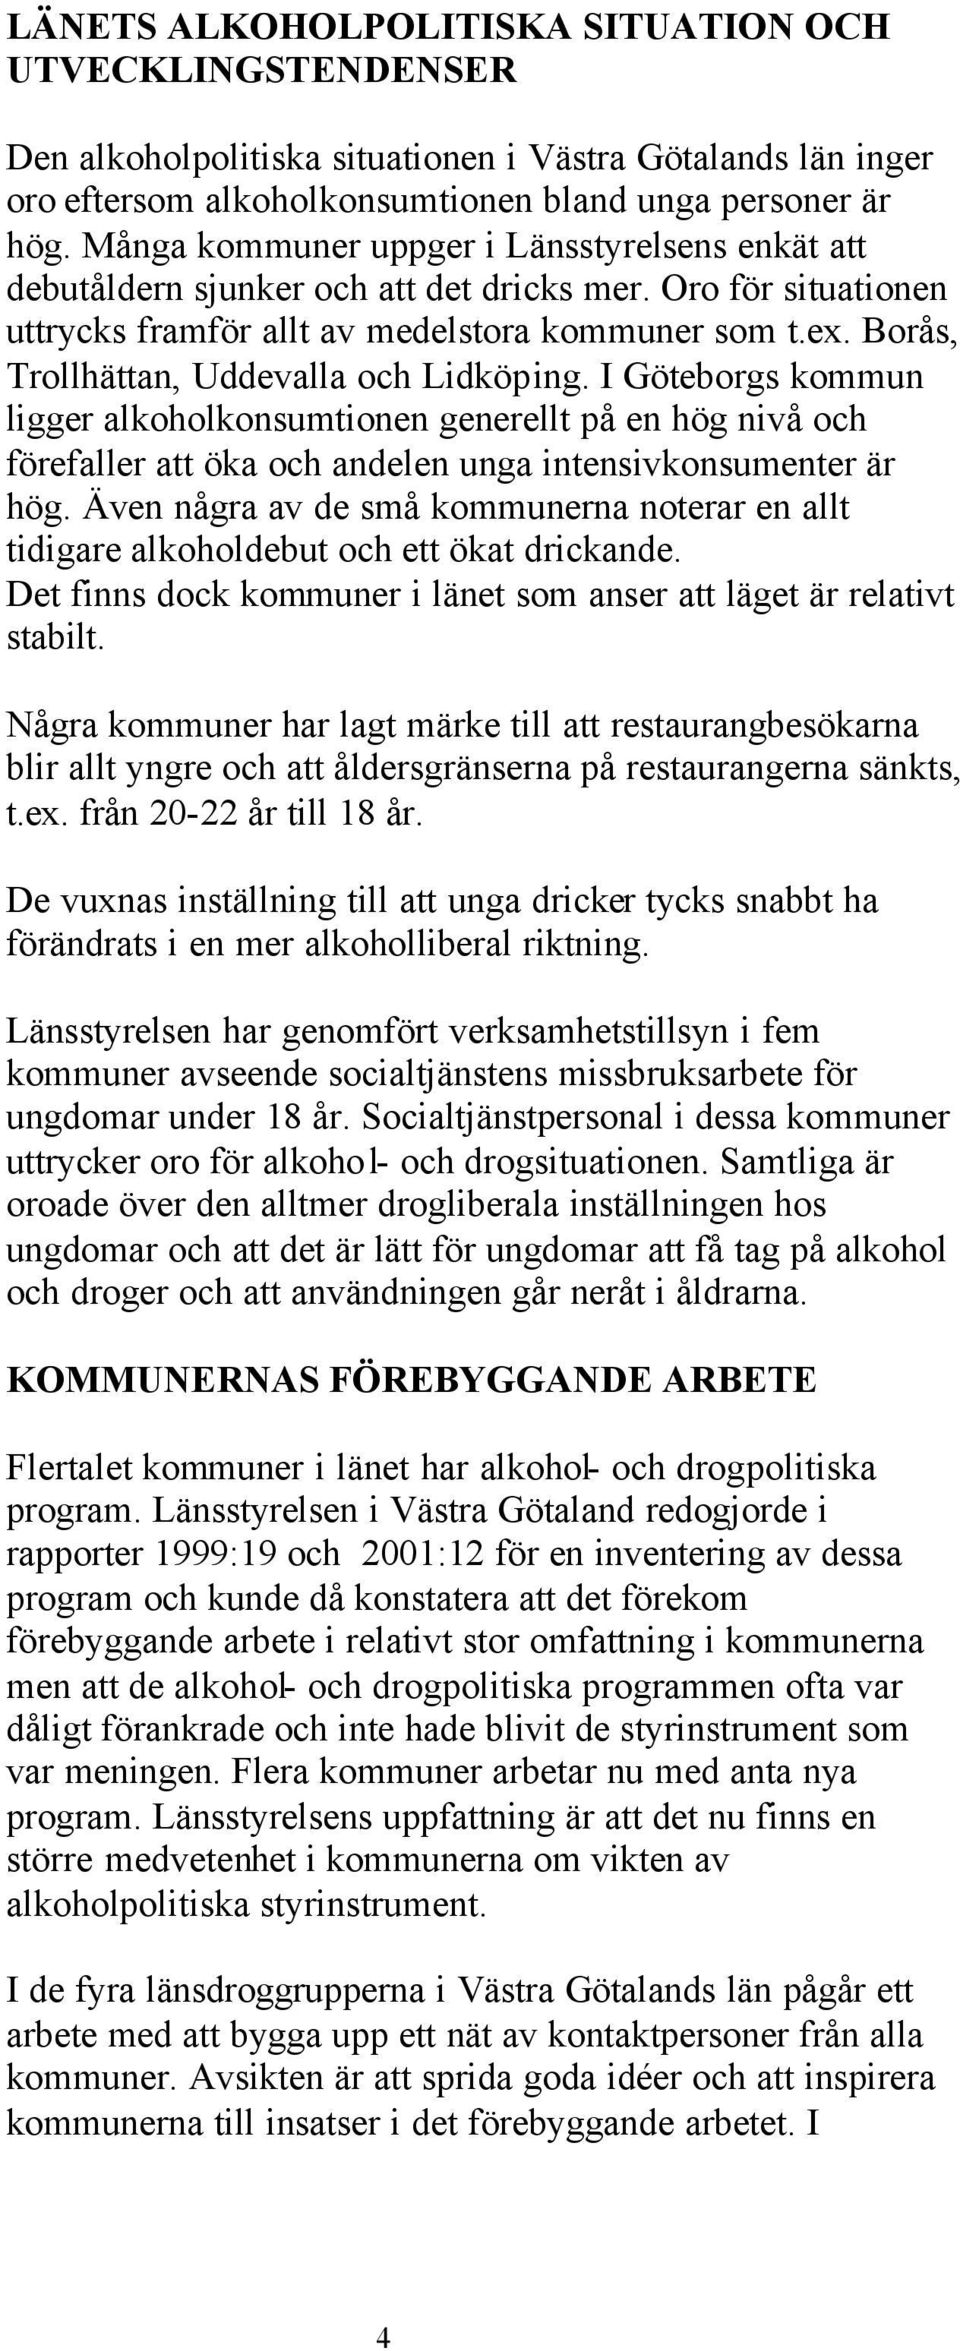 Borås, Trollhättan, Uddevalla och Lidköping. I Göteborgs kommun ligger alkoholkonsumtionen generellt på en hög nivå och förefaller att öka och andelen unga intensivkonsumenter är hög.